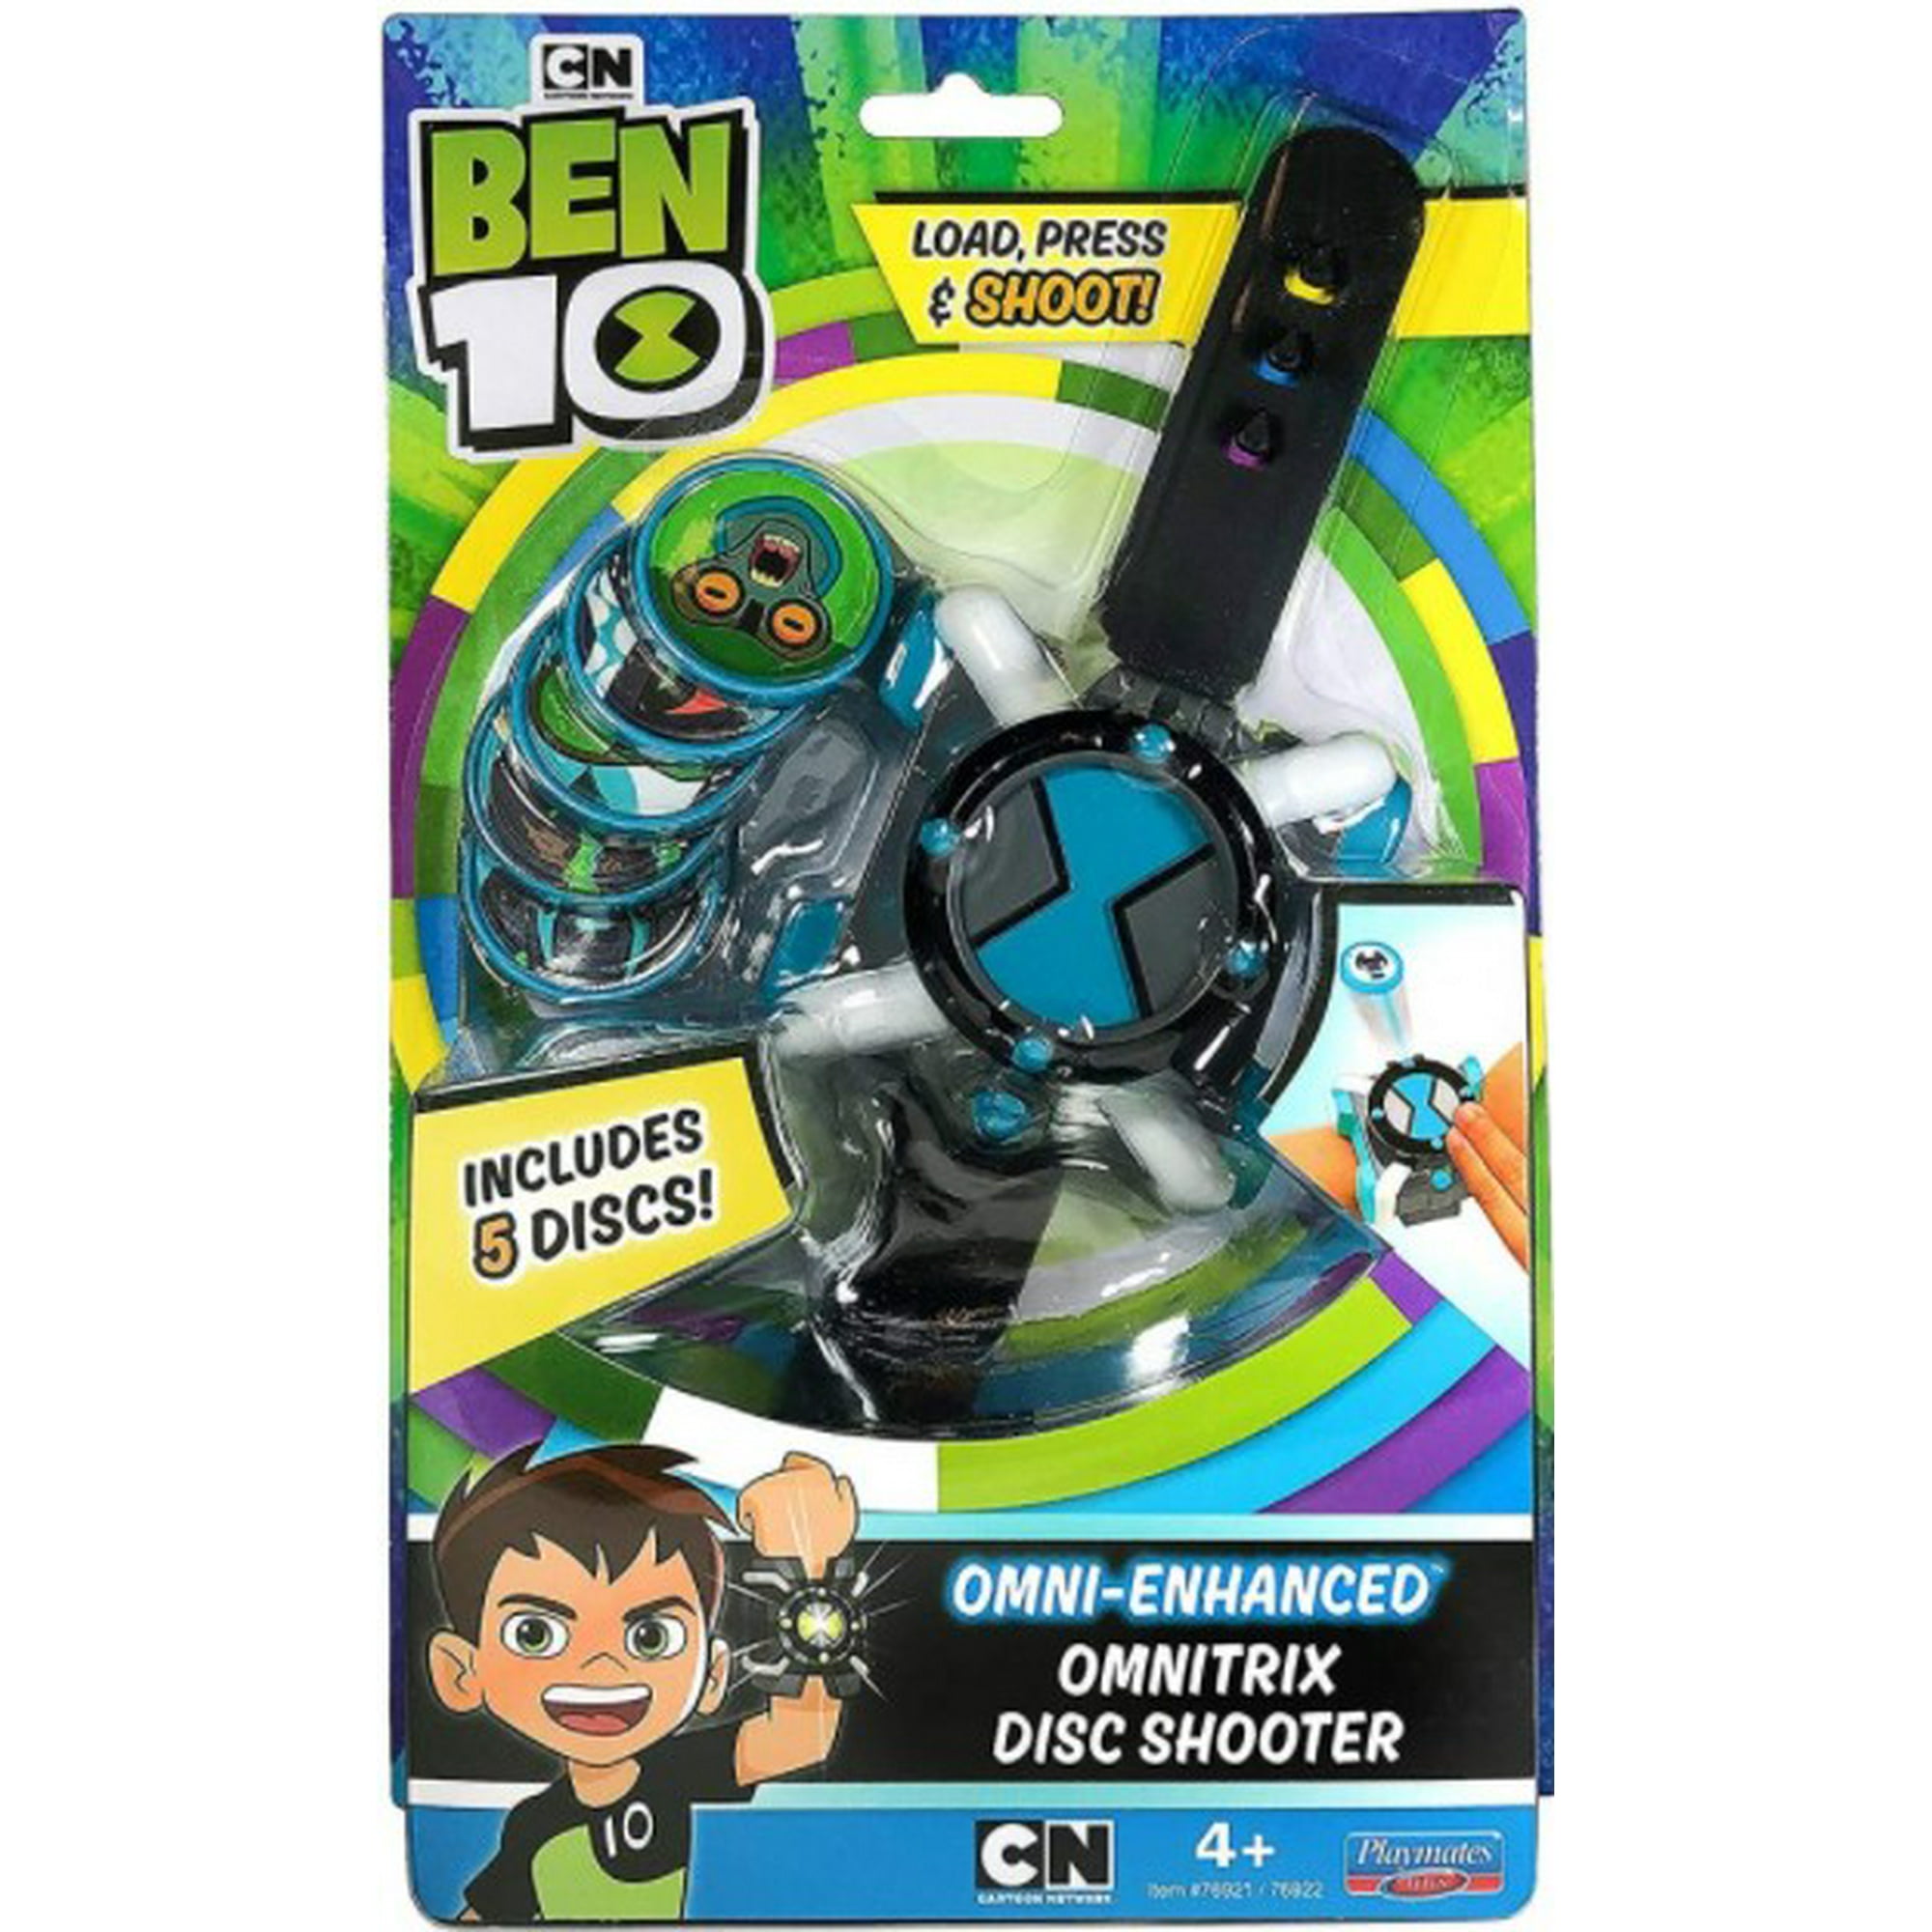 Ben10 Disc Shooter